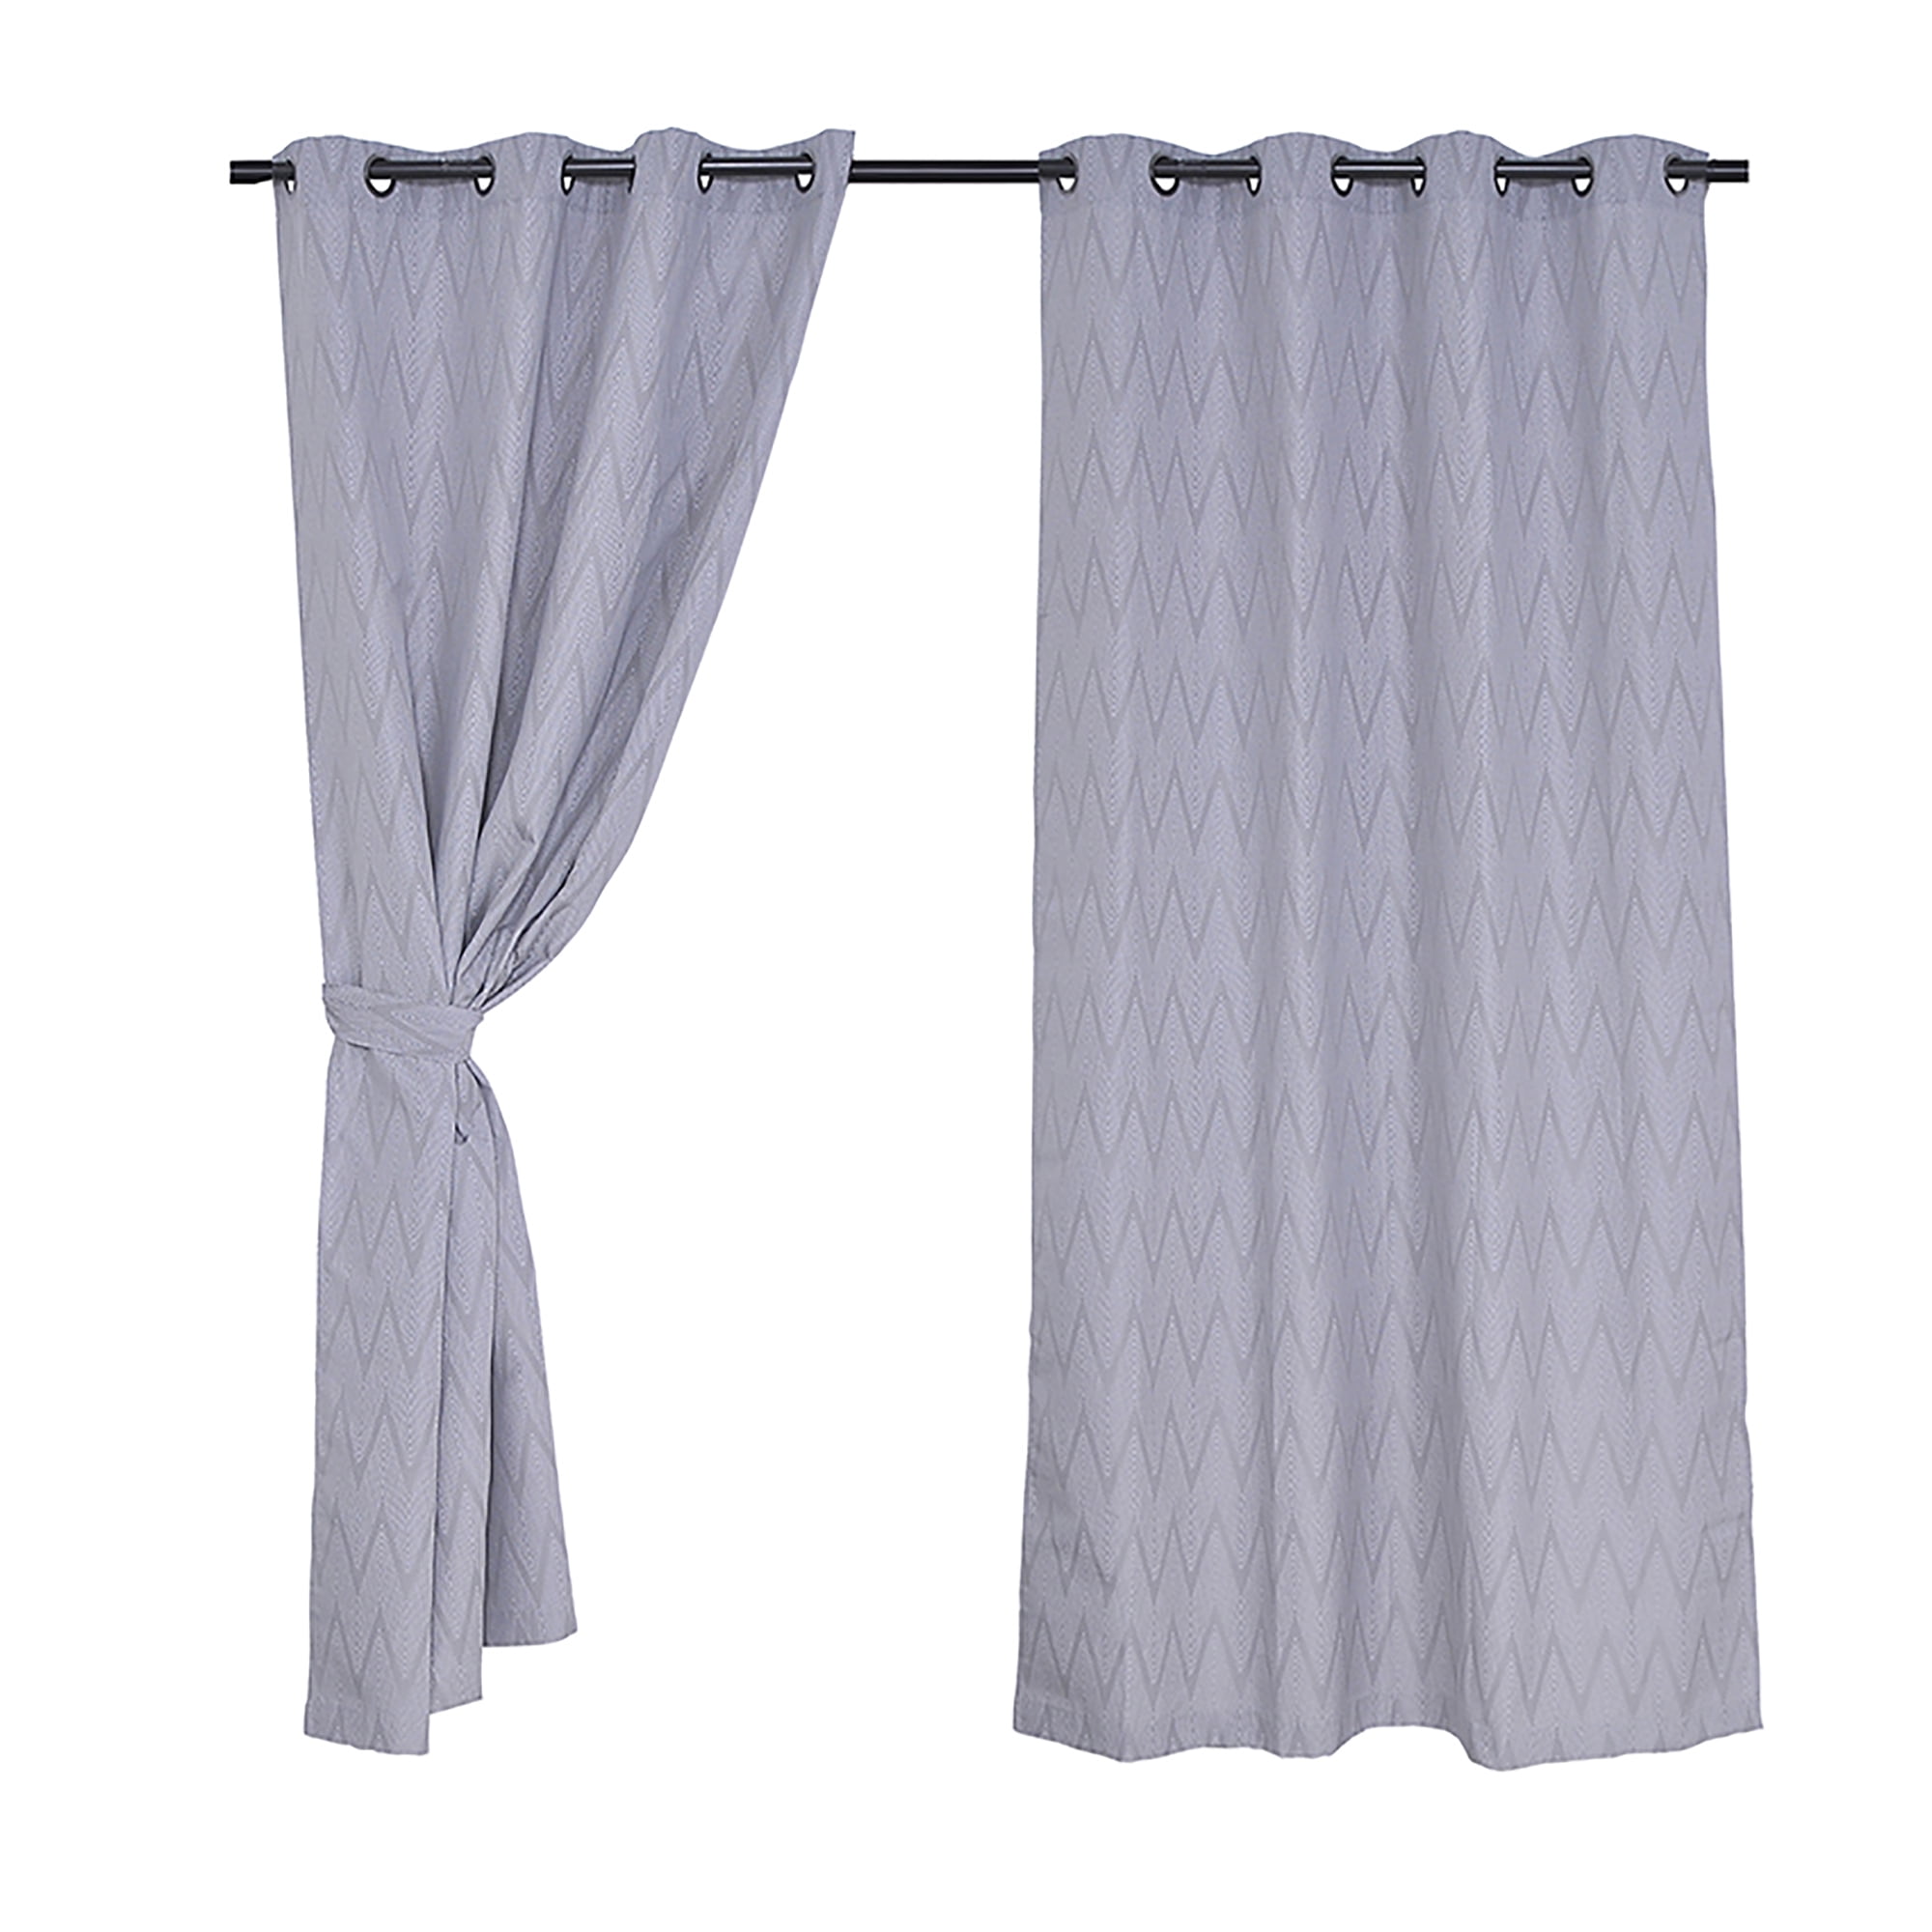 Mashini - Las cortinas de Mashini son una alternativa ideal para bloquear  la luz solar. Prácticas y resistentes, funcionan como aislante térmico para  el frío o el calor, siendo además fáciles y